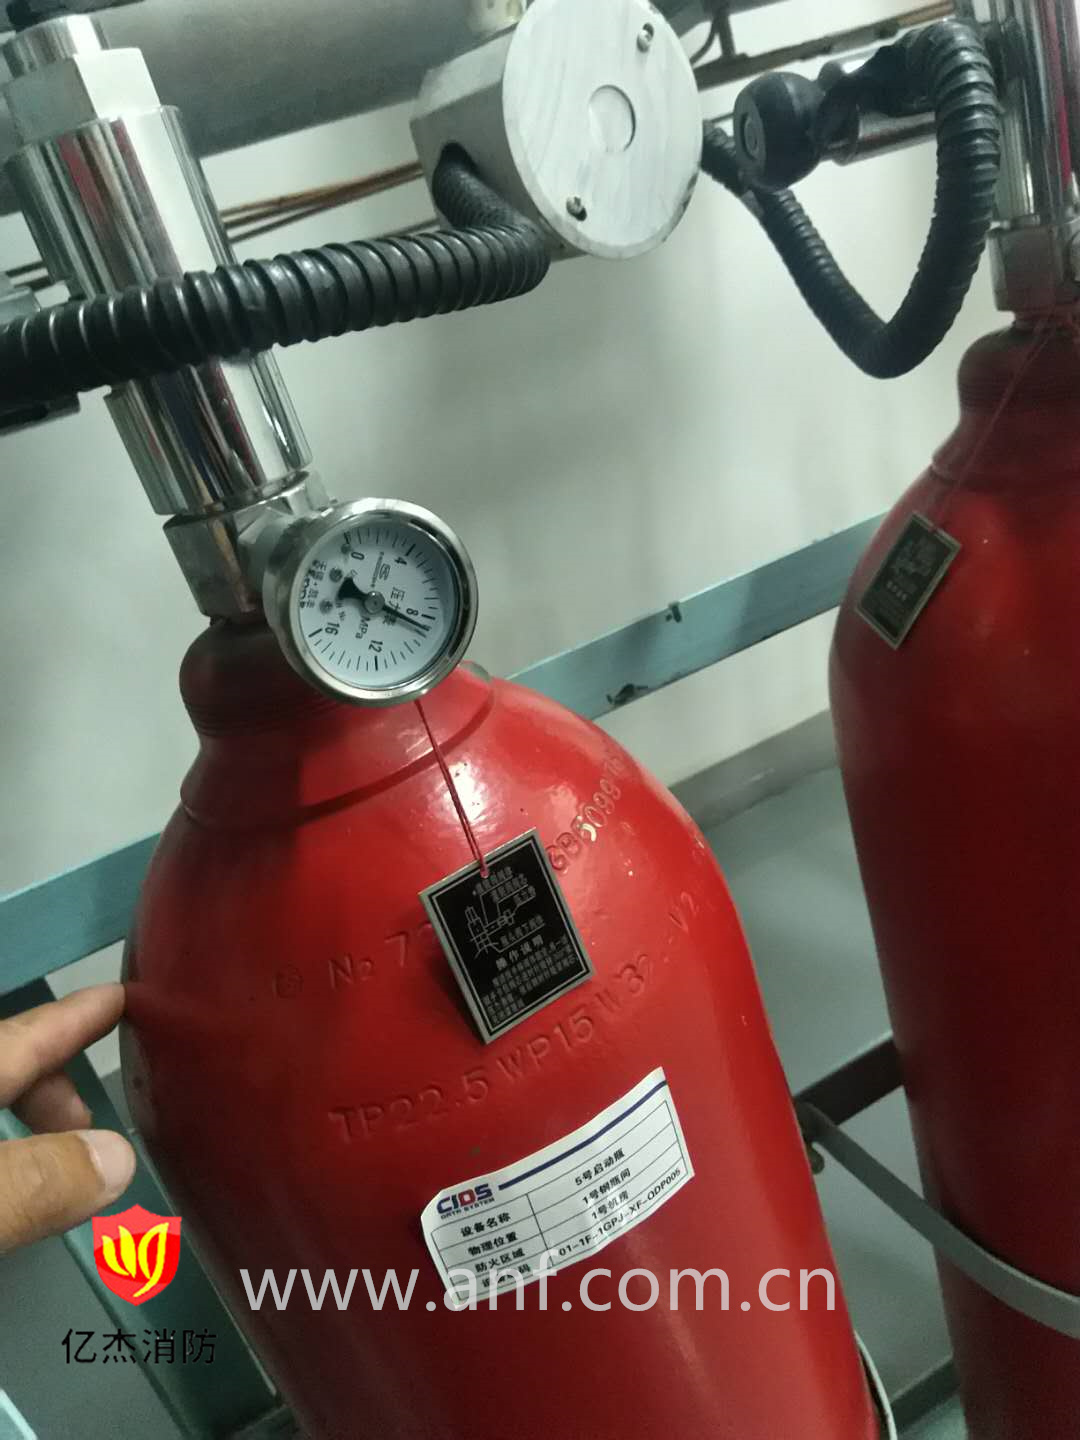 <b>营口山消防主机维修定检消防灭火系统用的气瓶如何做定期检测？</b>